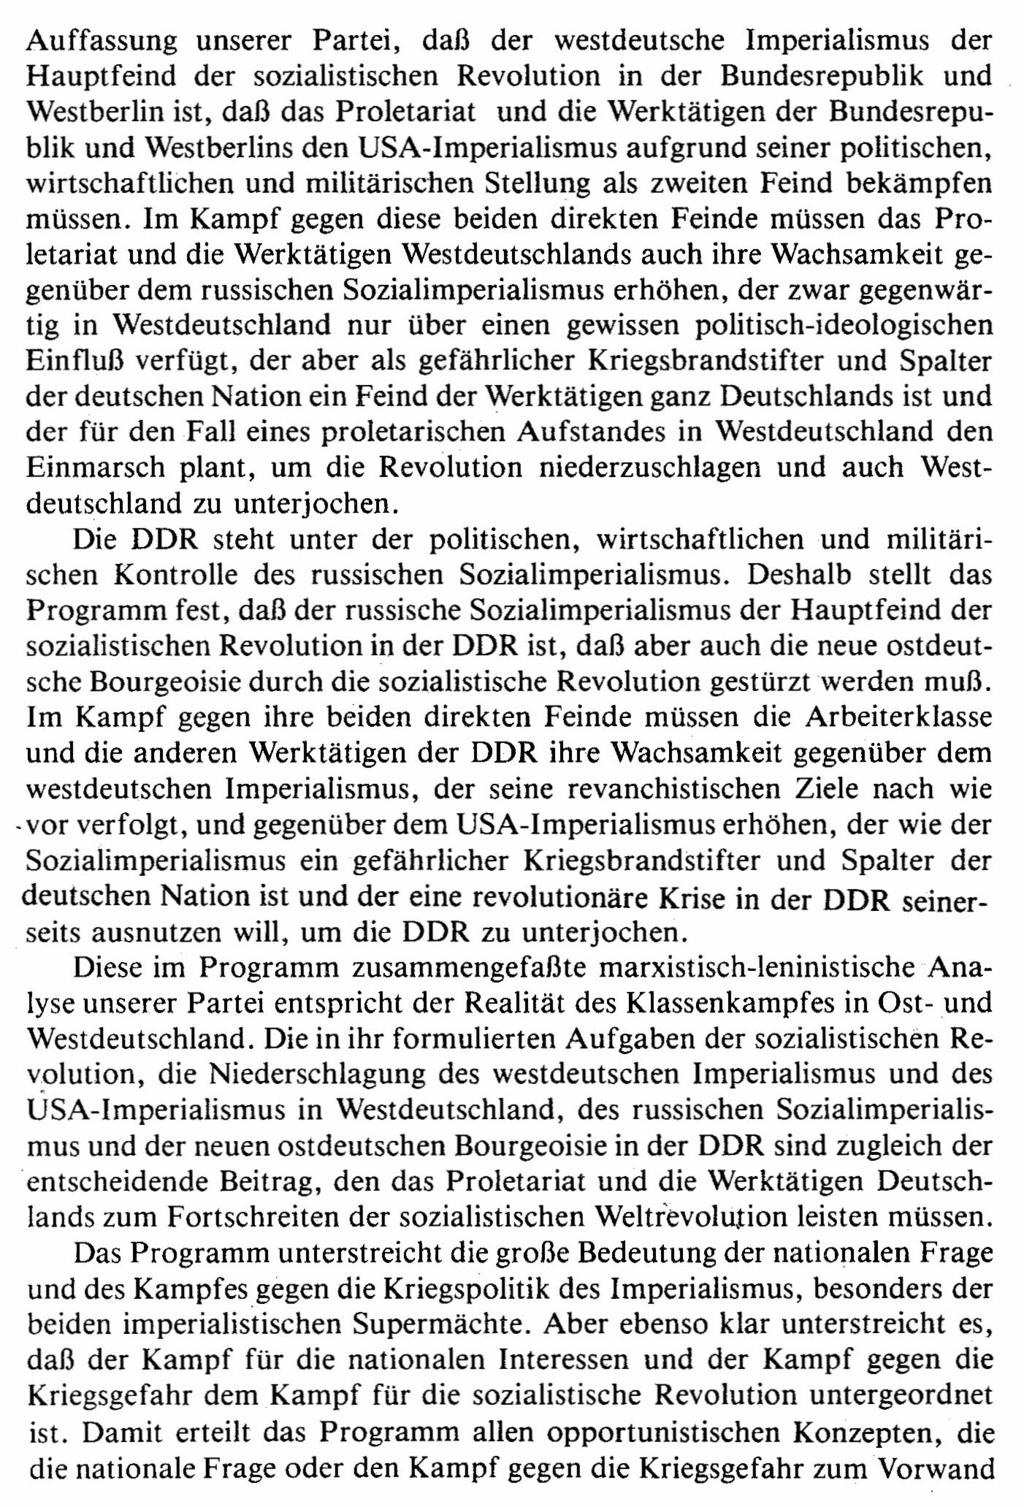 Auffassung unserer Partei, daß der westdeutsche Imperialismus der Hauptfeind der sozialistischen Revolution in der Bundesrepublik und Westberlin ist, daß das Proletariat und die Werktätigen der